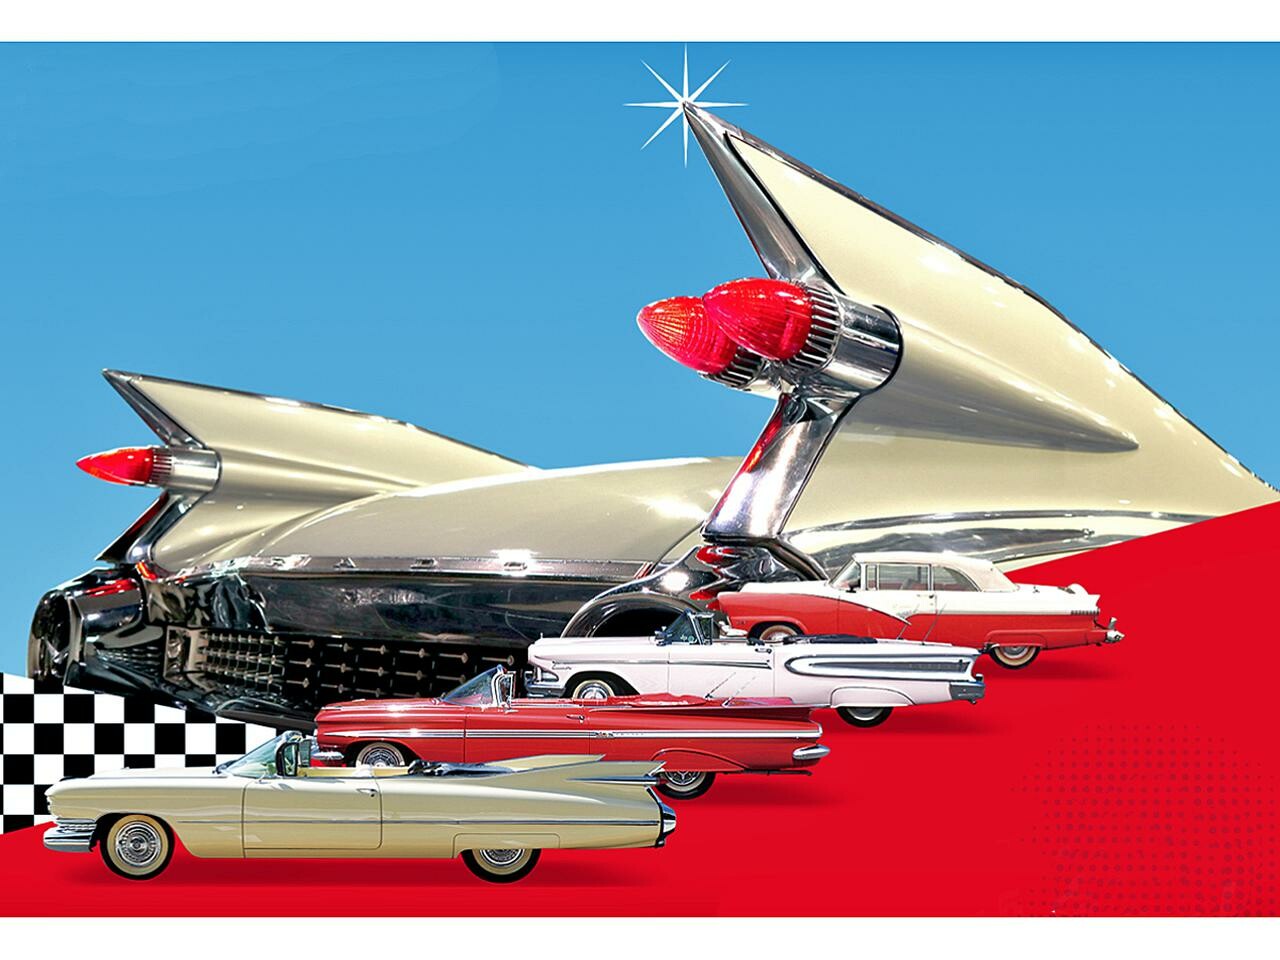 トヨタ博物館が1950年代のアメ車を集めた企画展「テールフィン・ラブ」を2021年4月23日から開催【イベント】